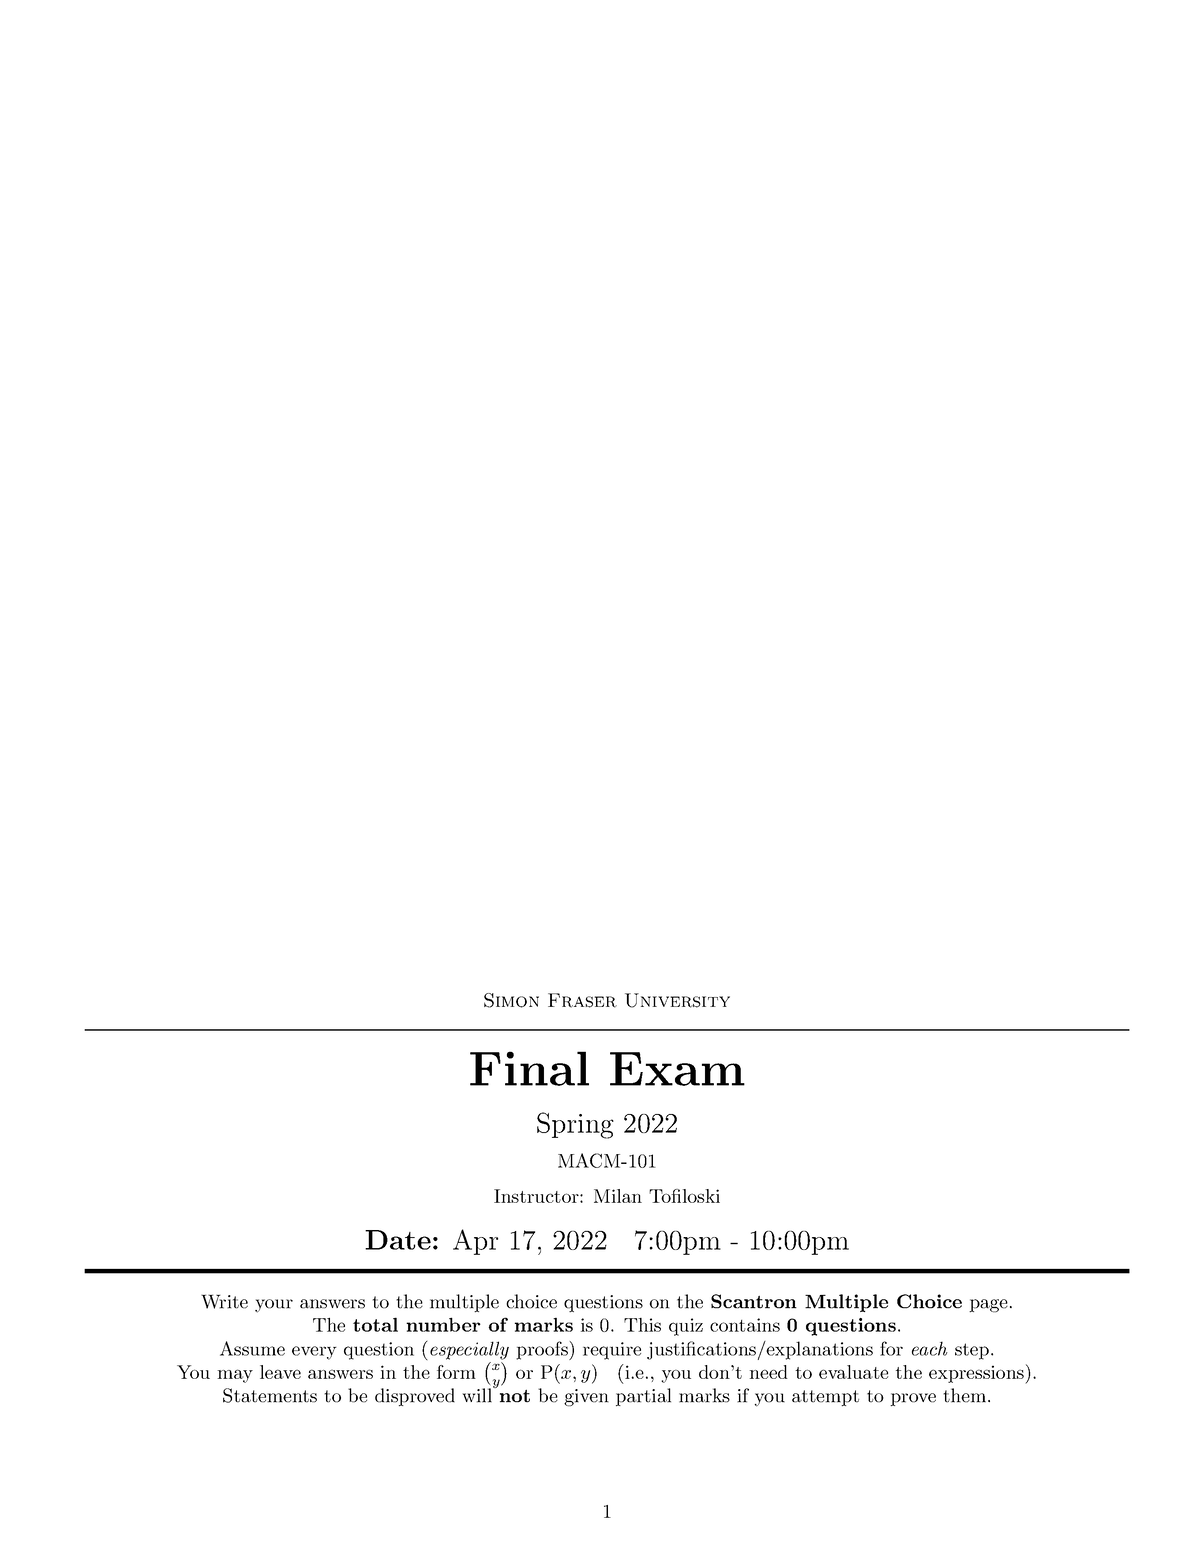 FinalExamCheatSheetfinalversion Simon Fraser University Final